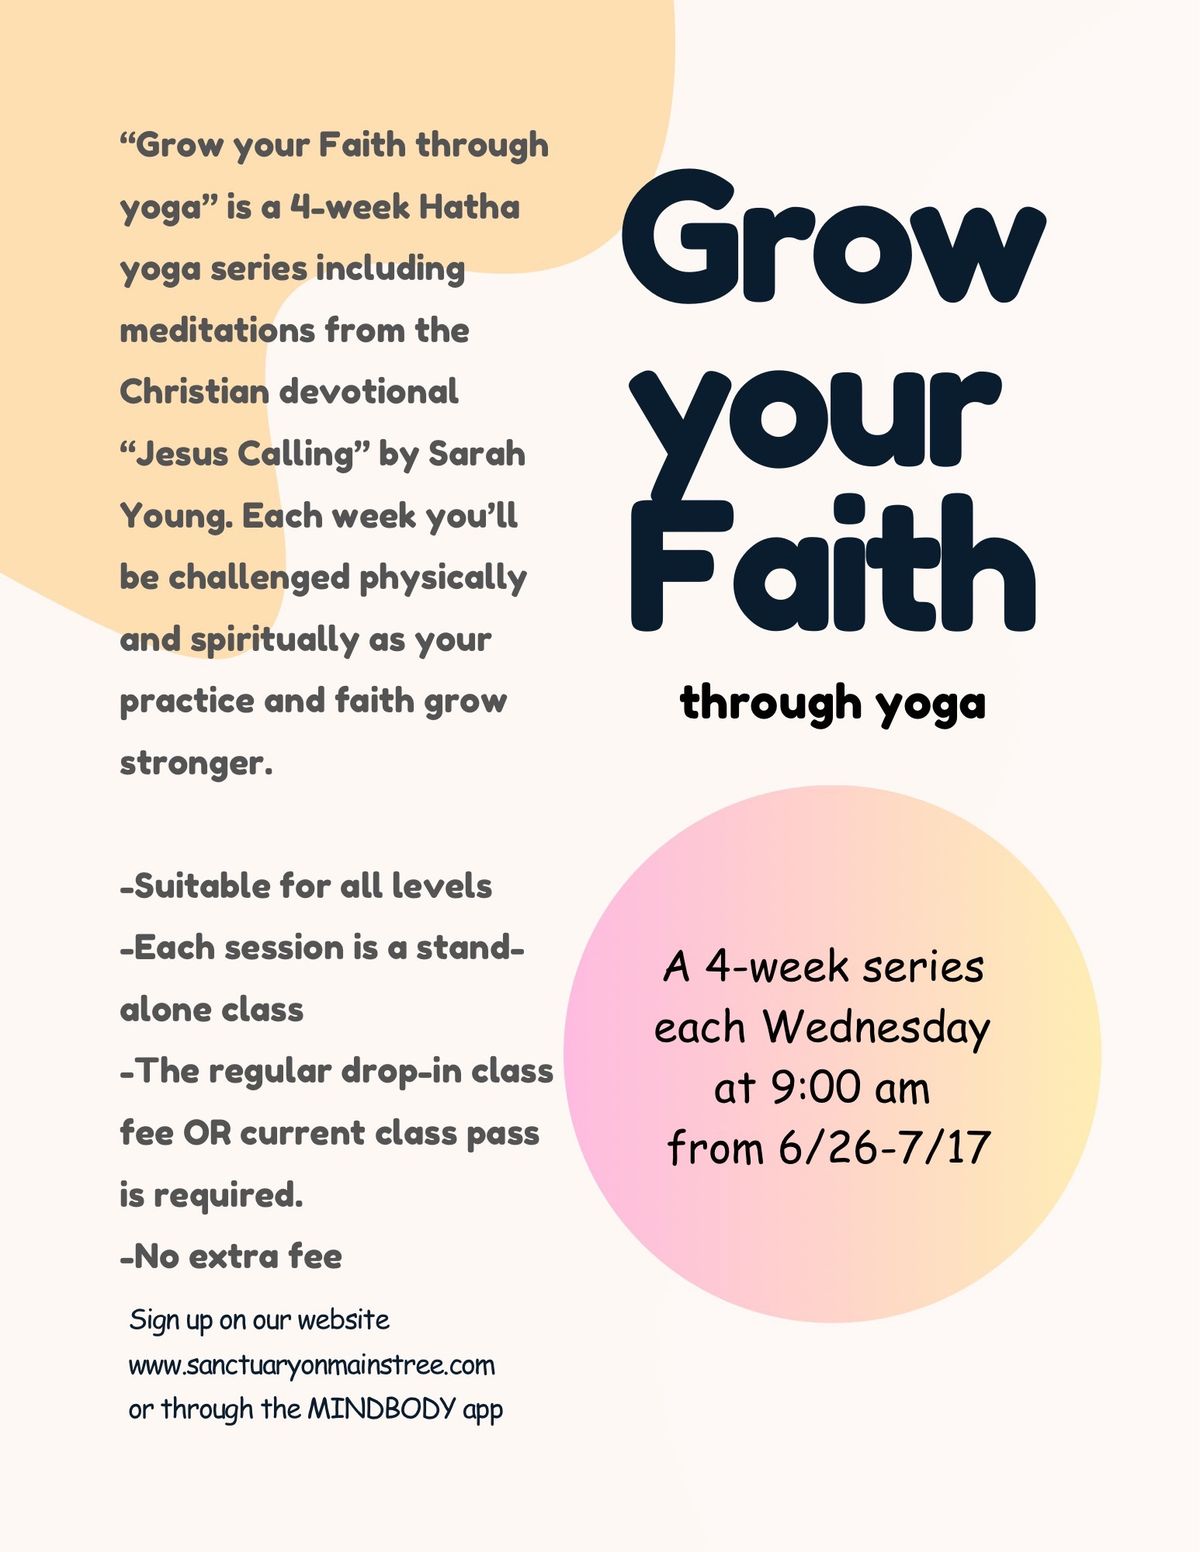 Grow your Faith Through Yoga